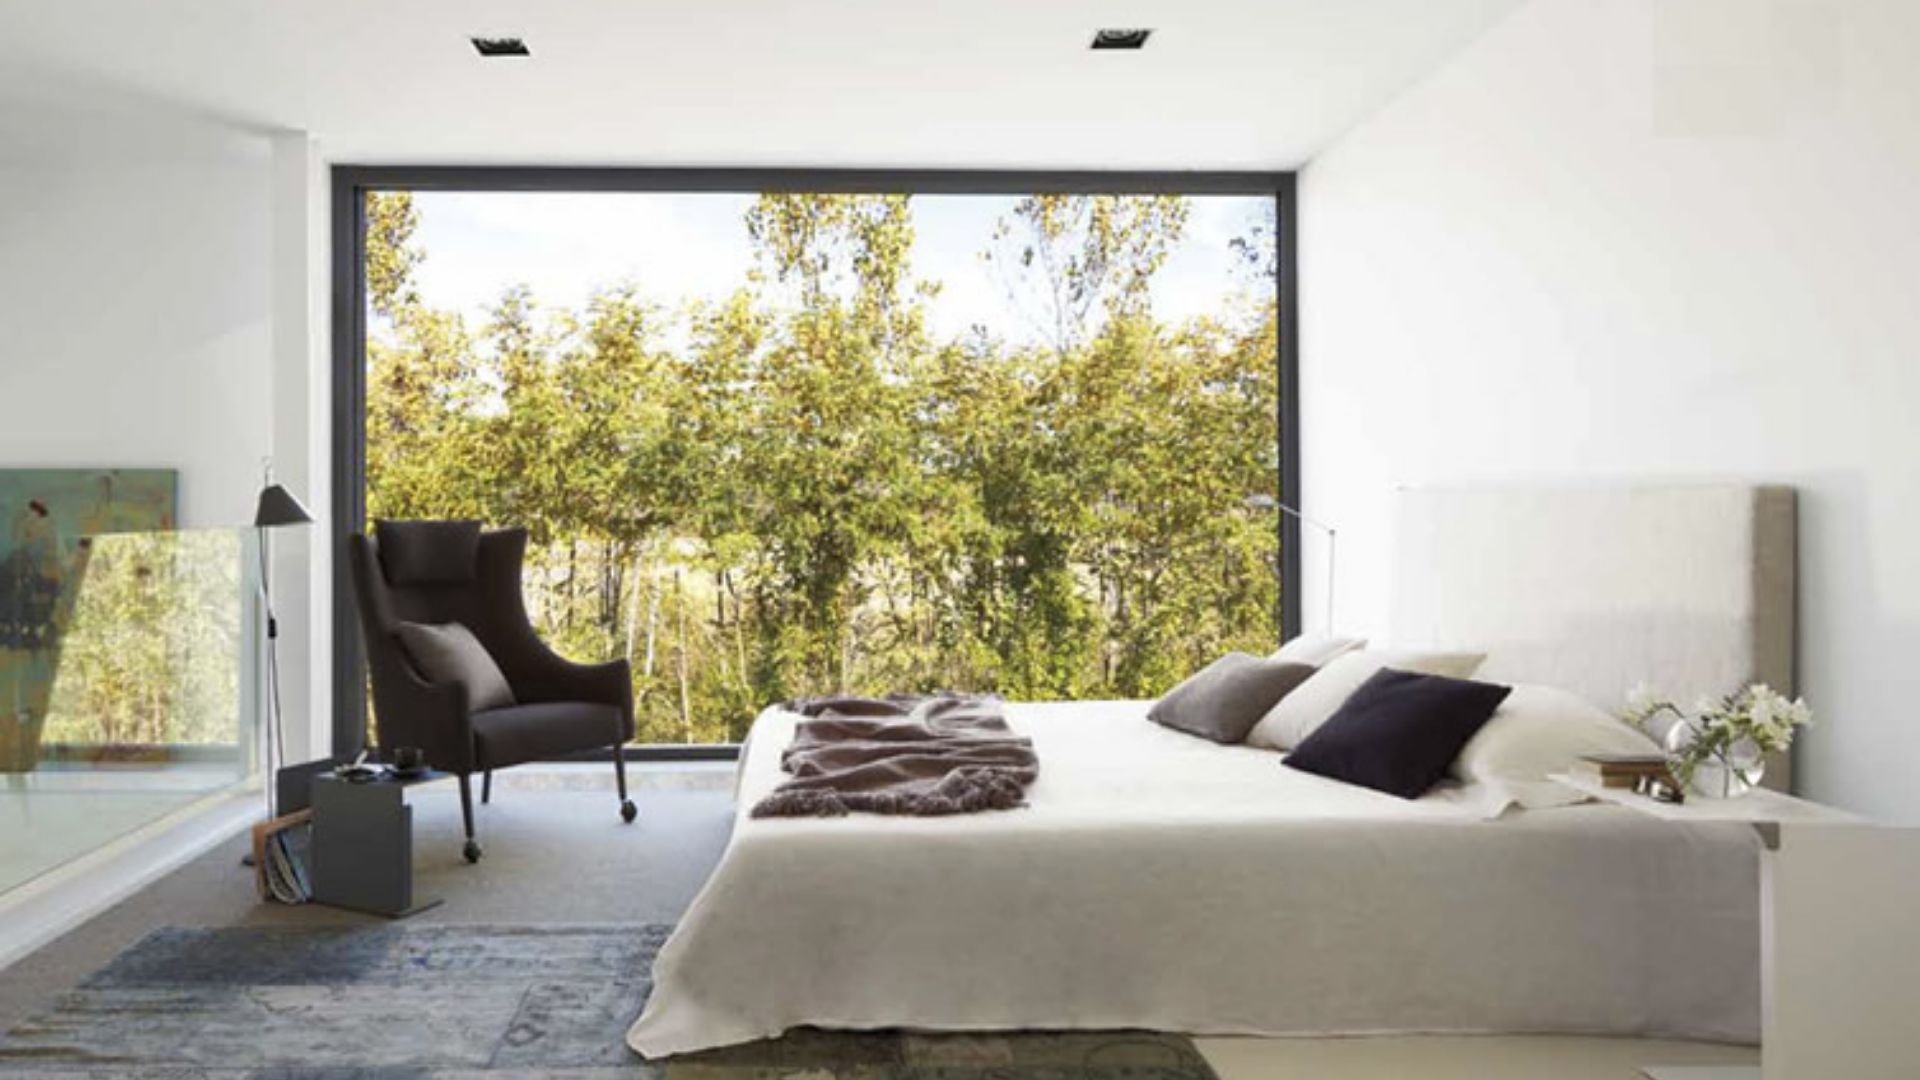 Arquitectura minimalista en Vic para el interior de tu casa